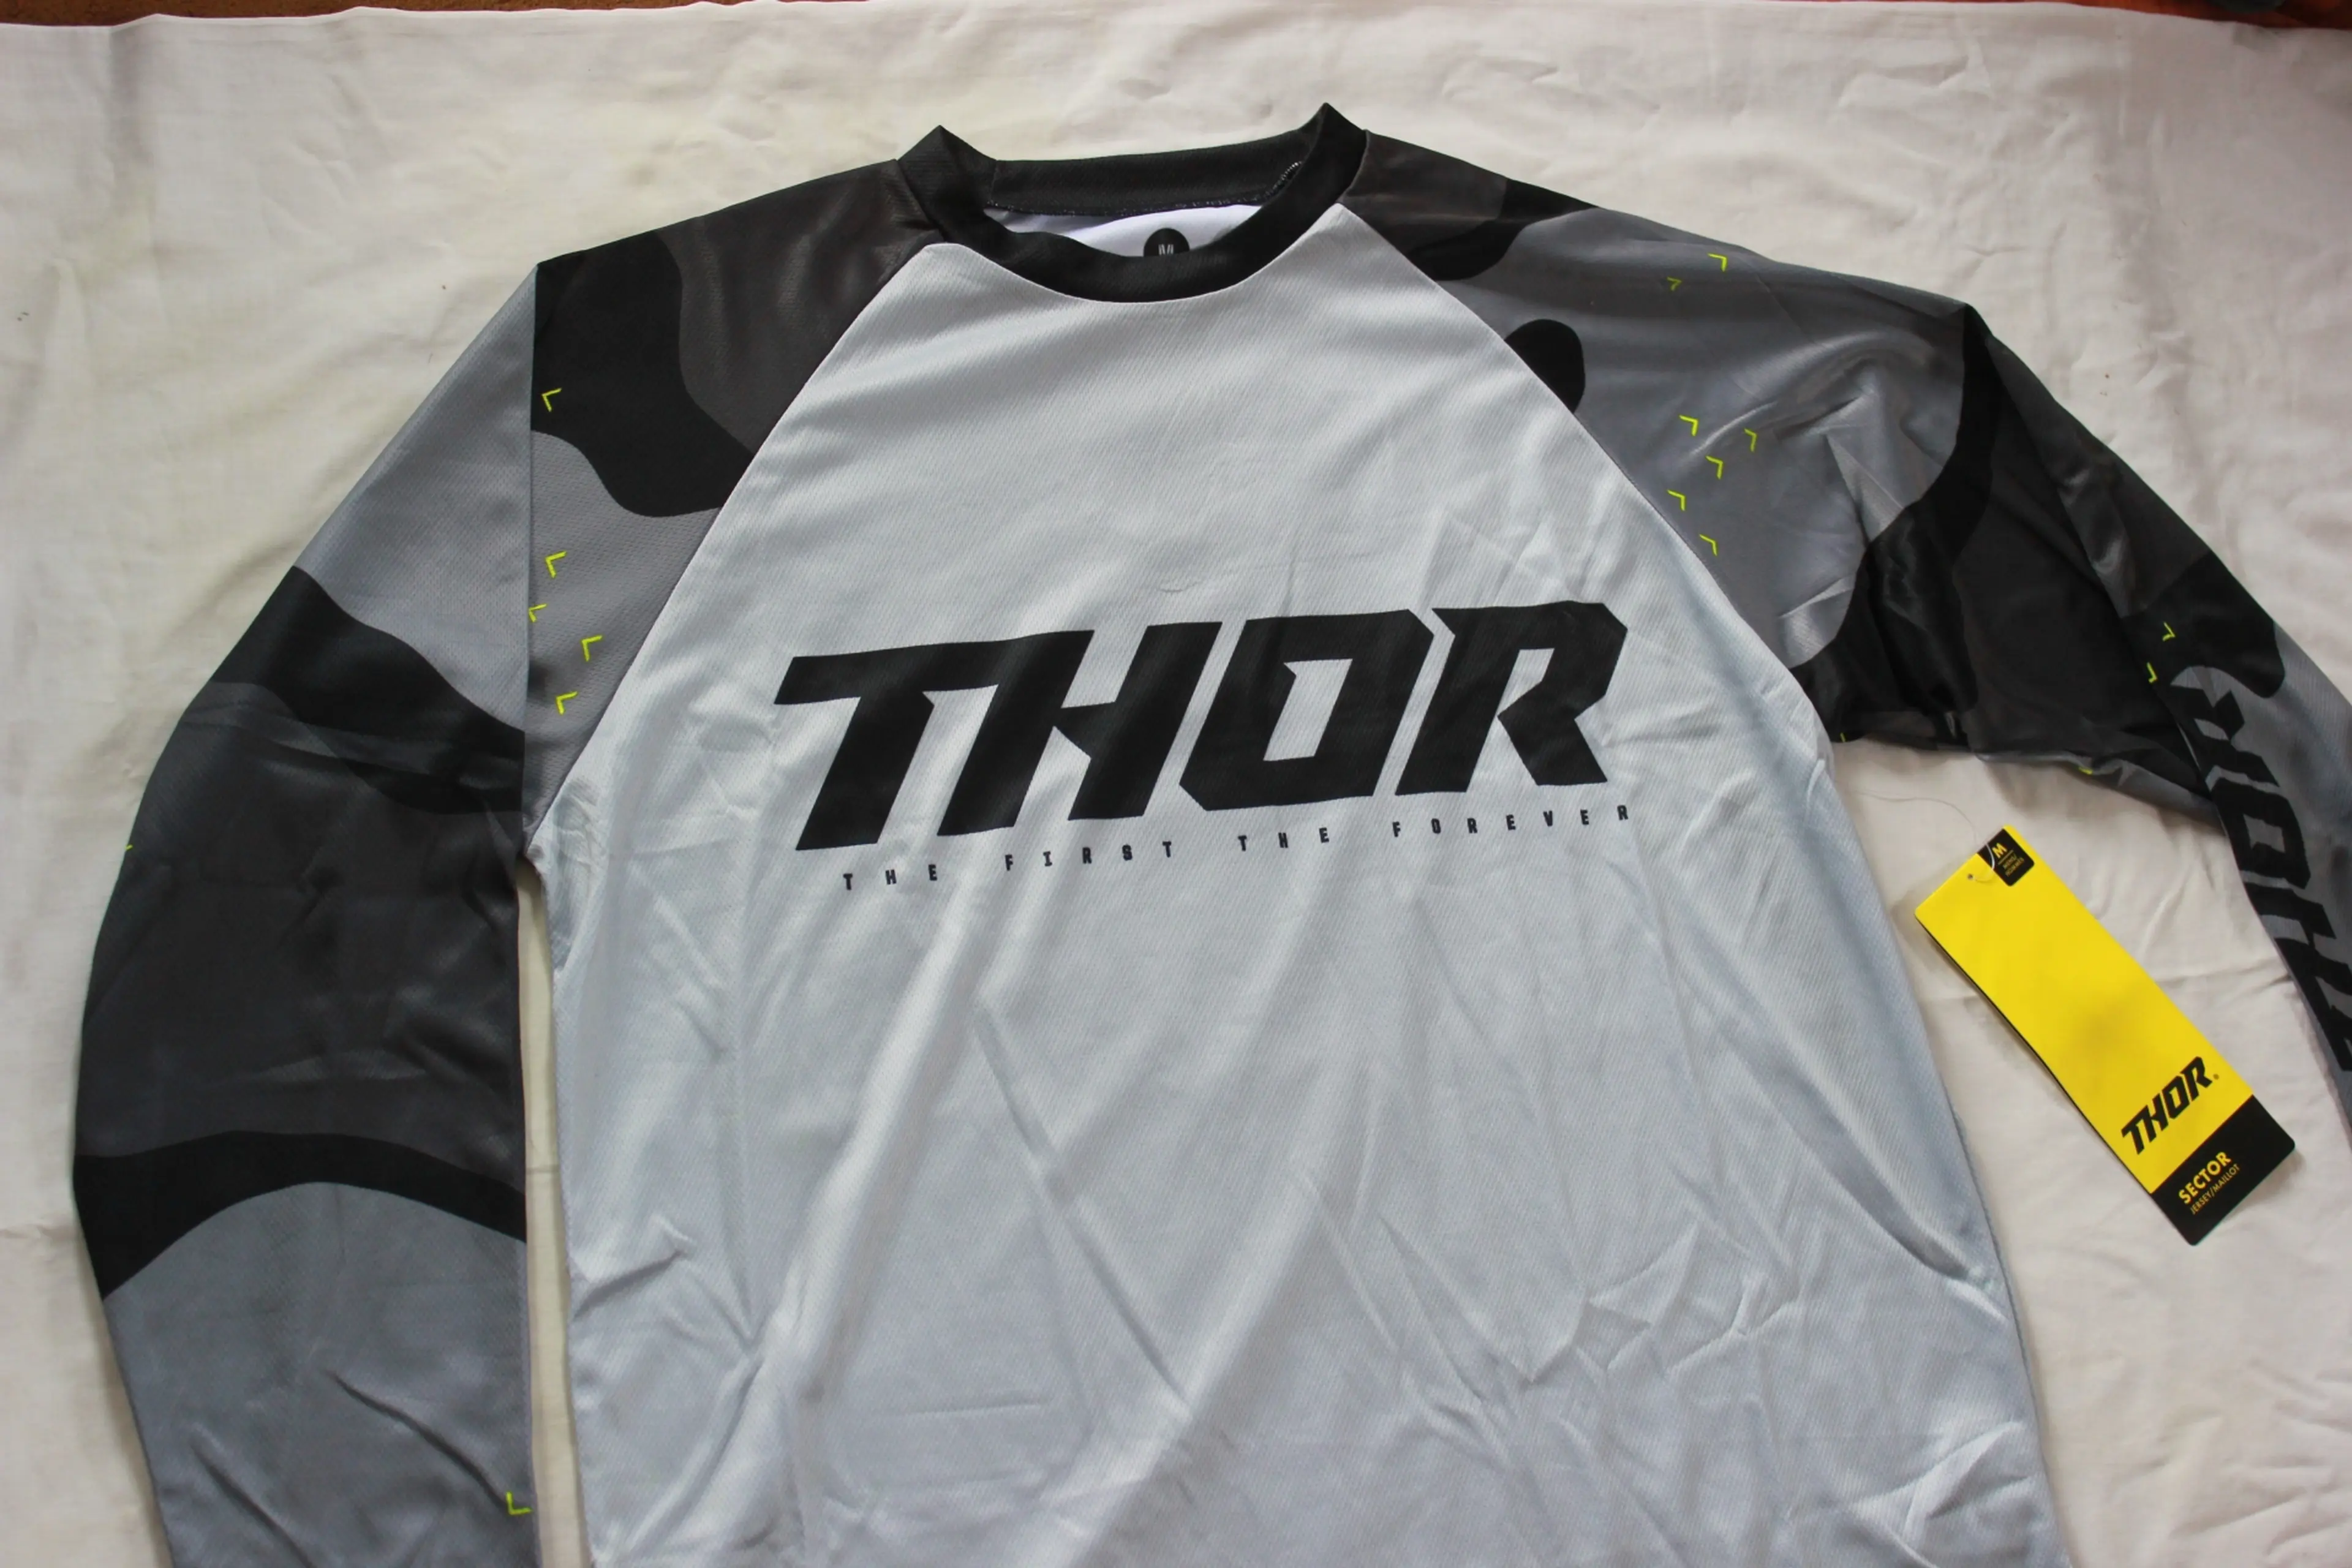 2. Tricou Thor Enduro maneca lunga [M] - noi